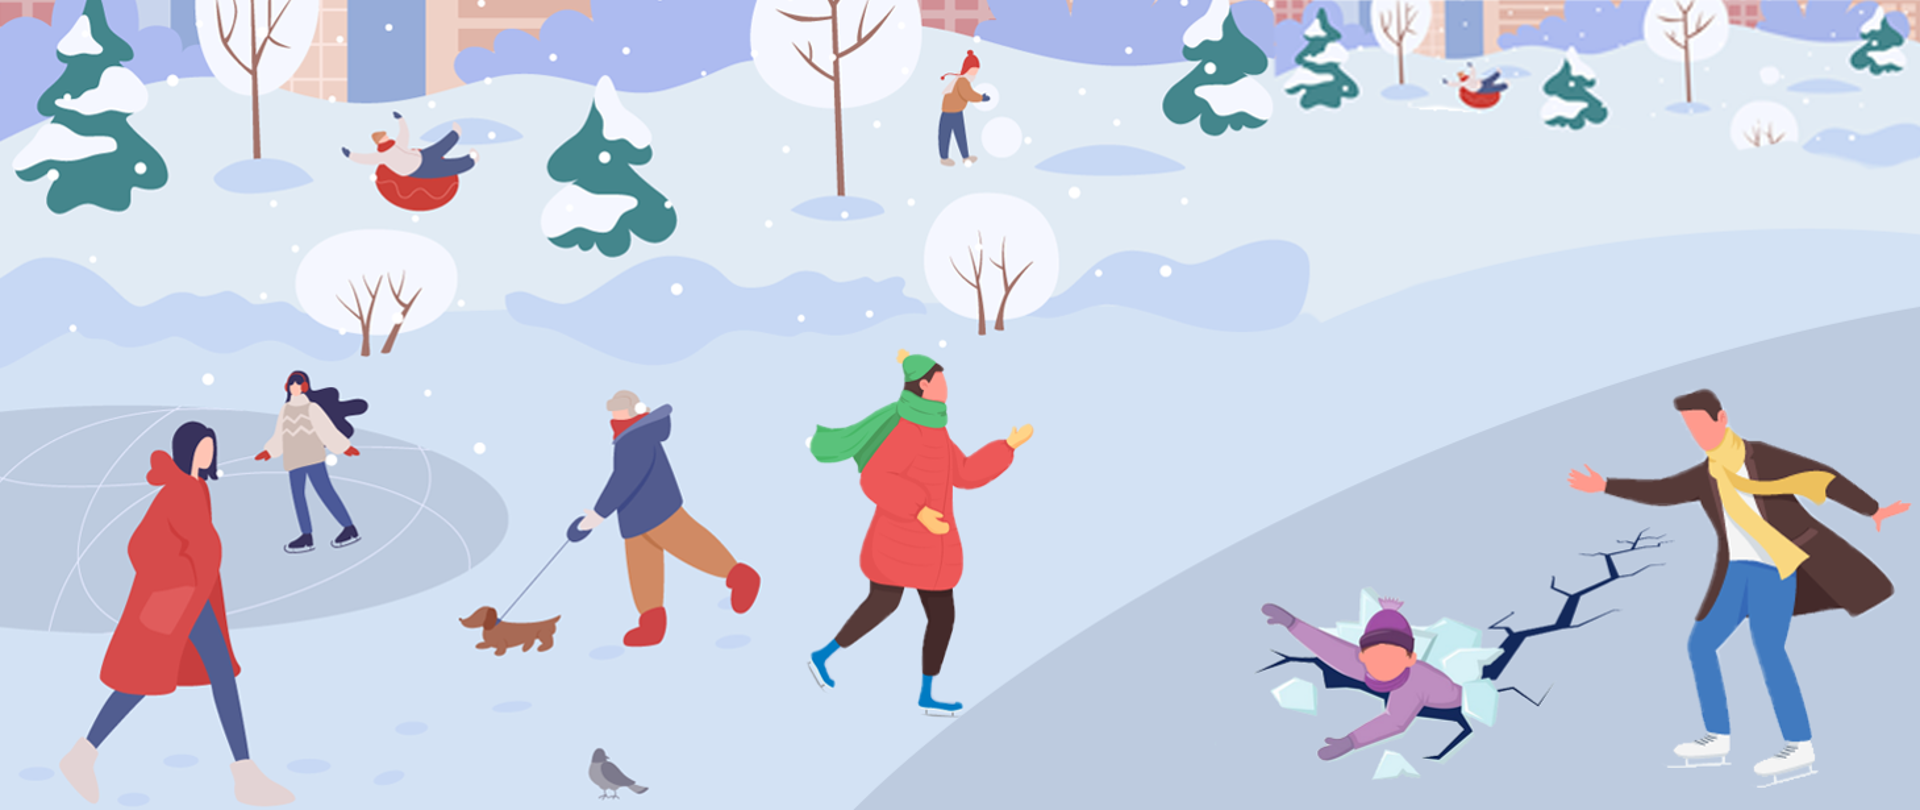 Obrazek rysunkowy z zimową scenerią oraz ludźmi na łyżwach